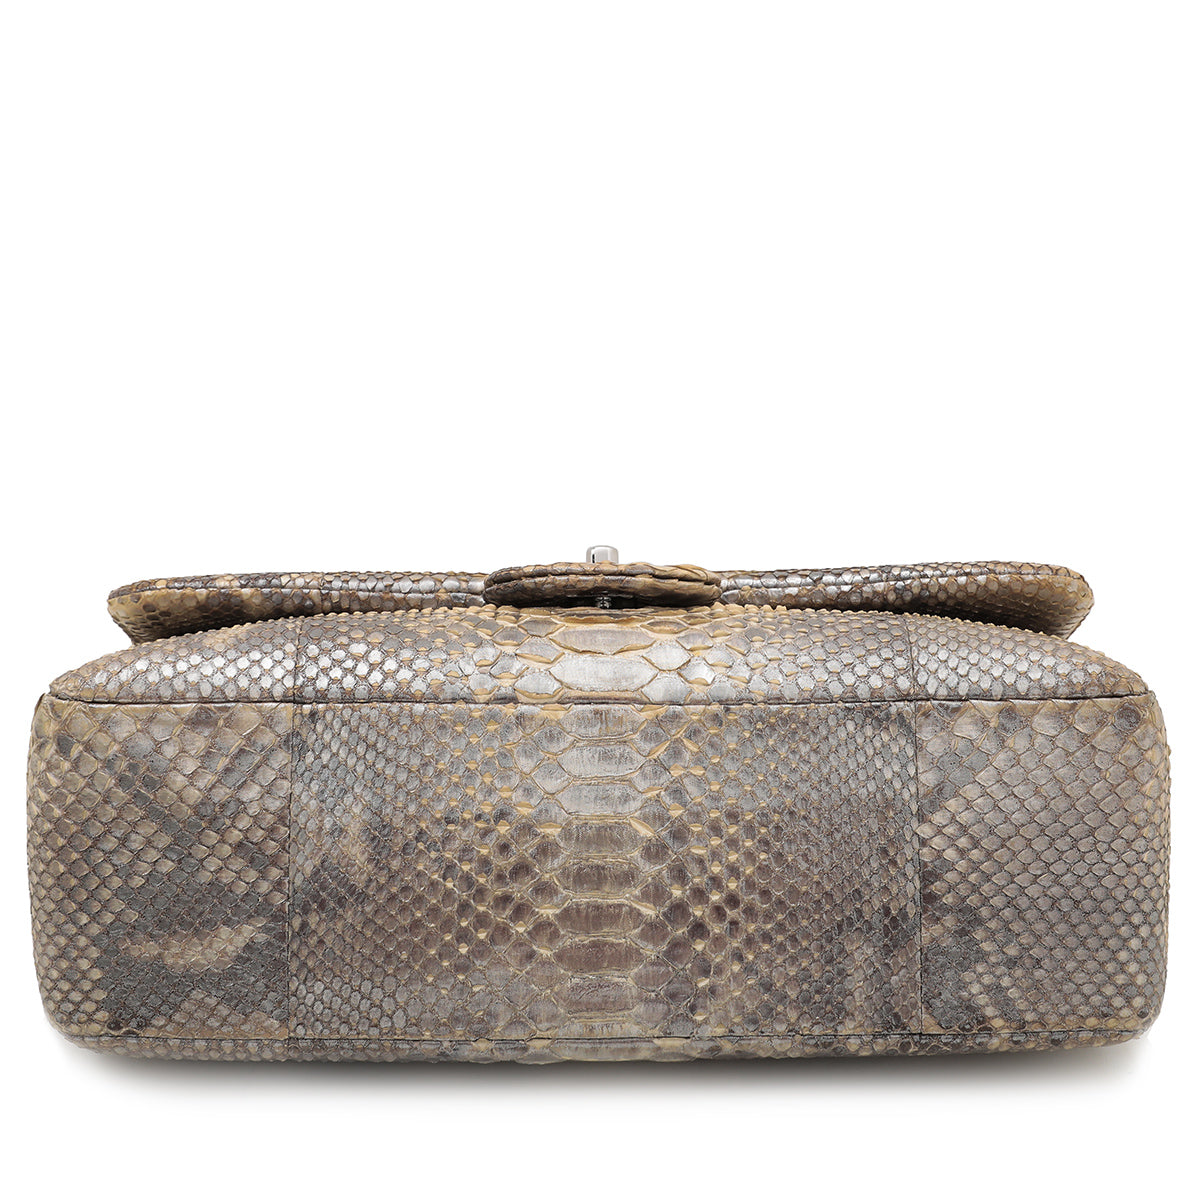 Chanel | Python Snakeskin Bag | Beige Tan | 25171080 | BRAND NEW MEGA RARE!  💫💖